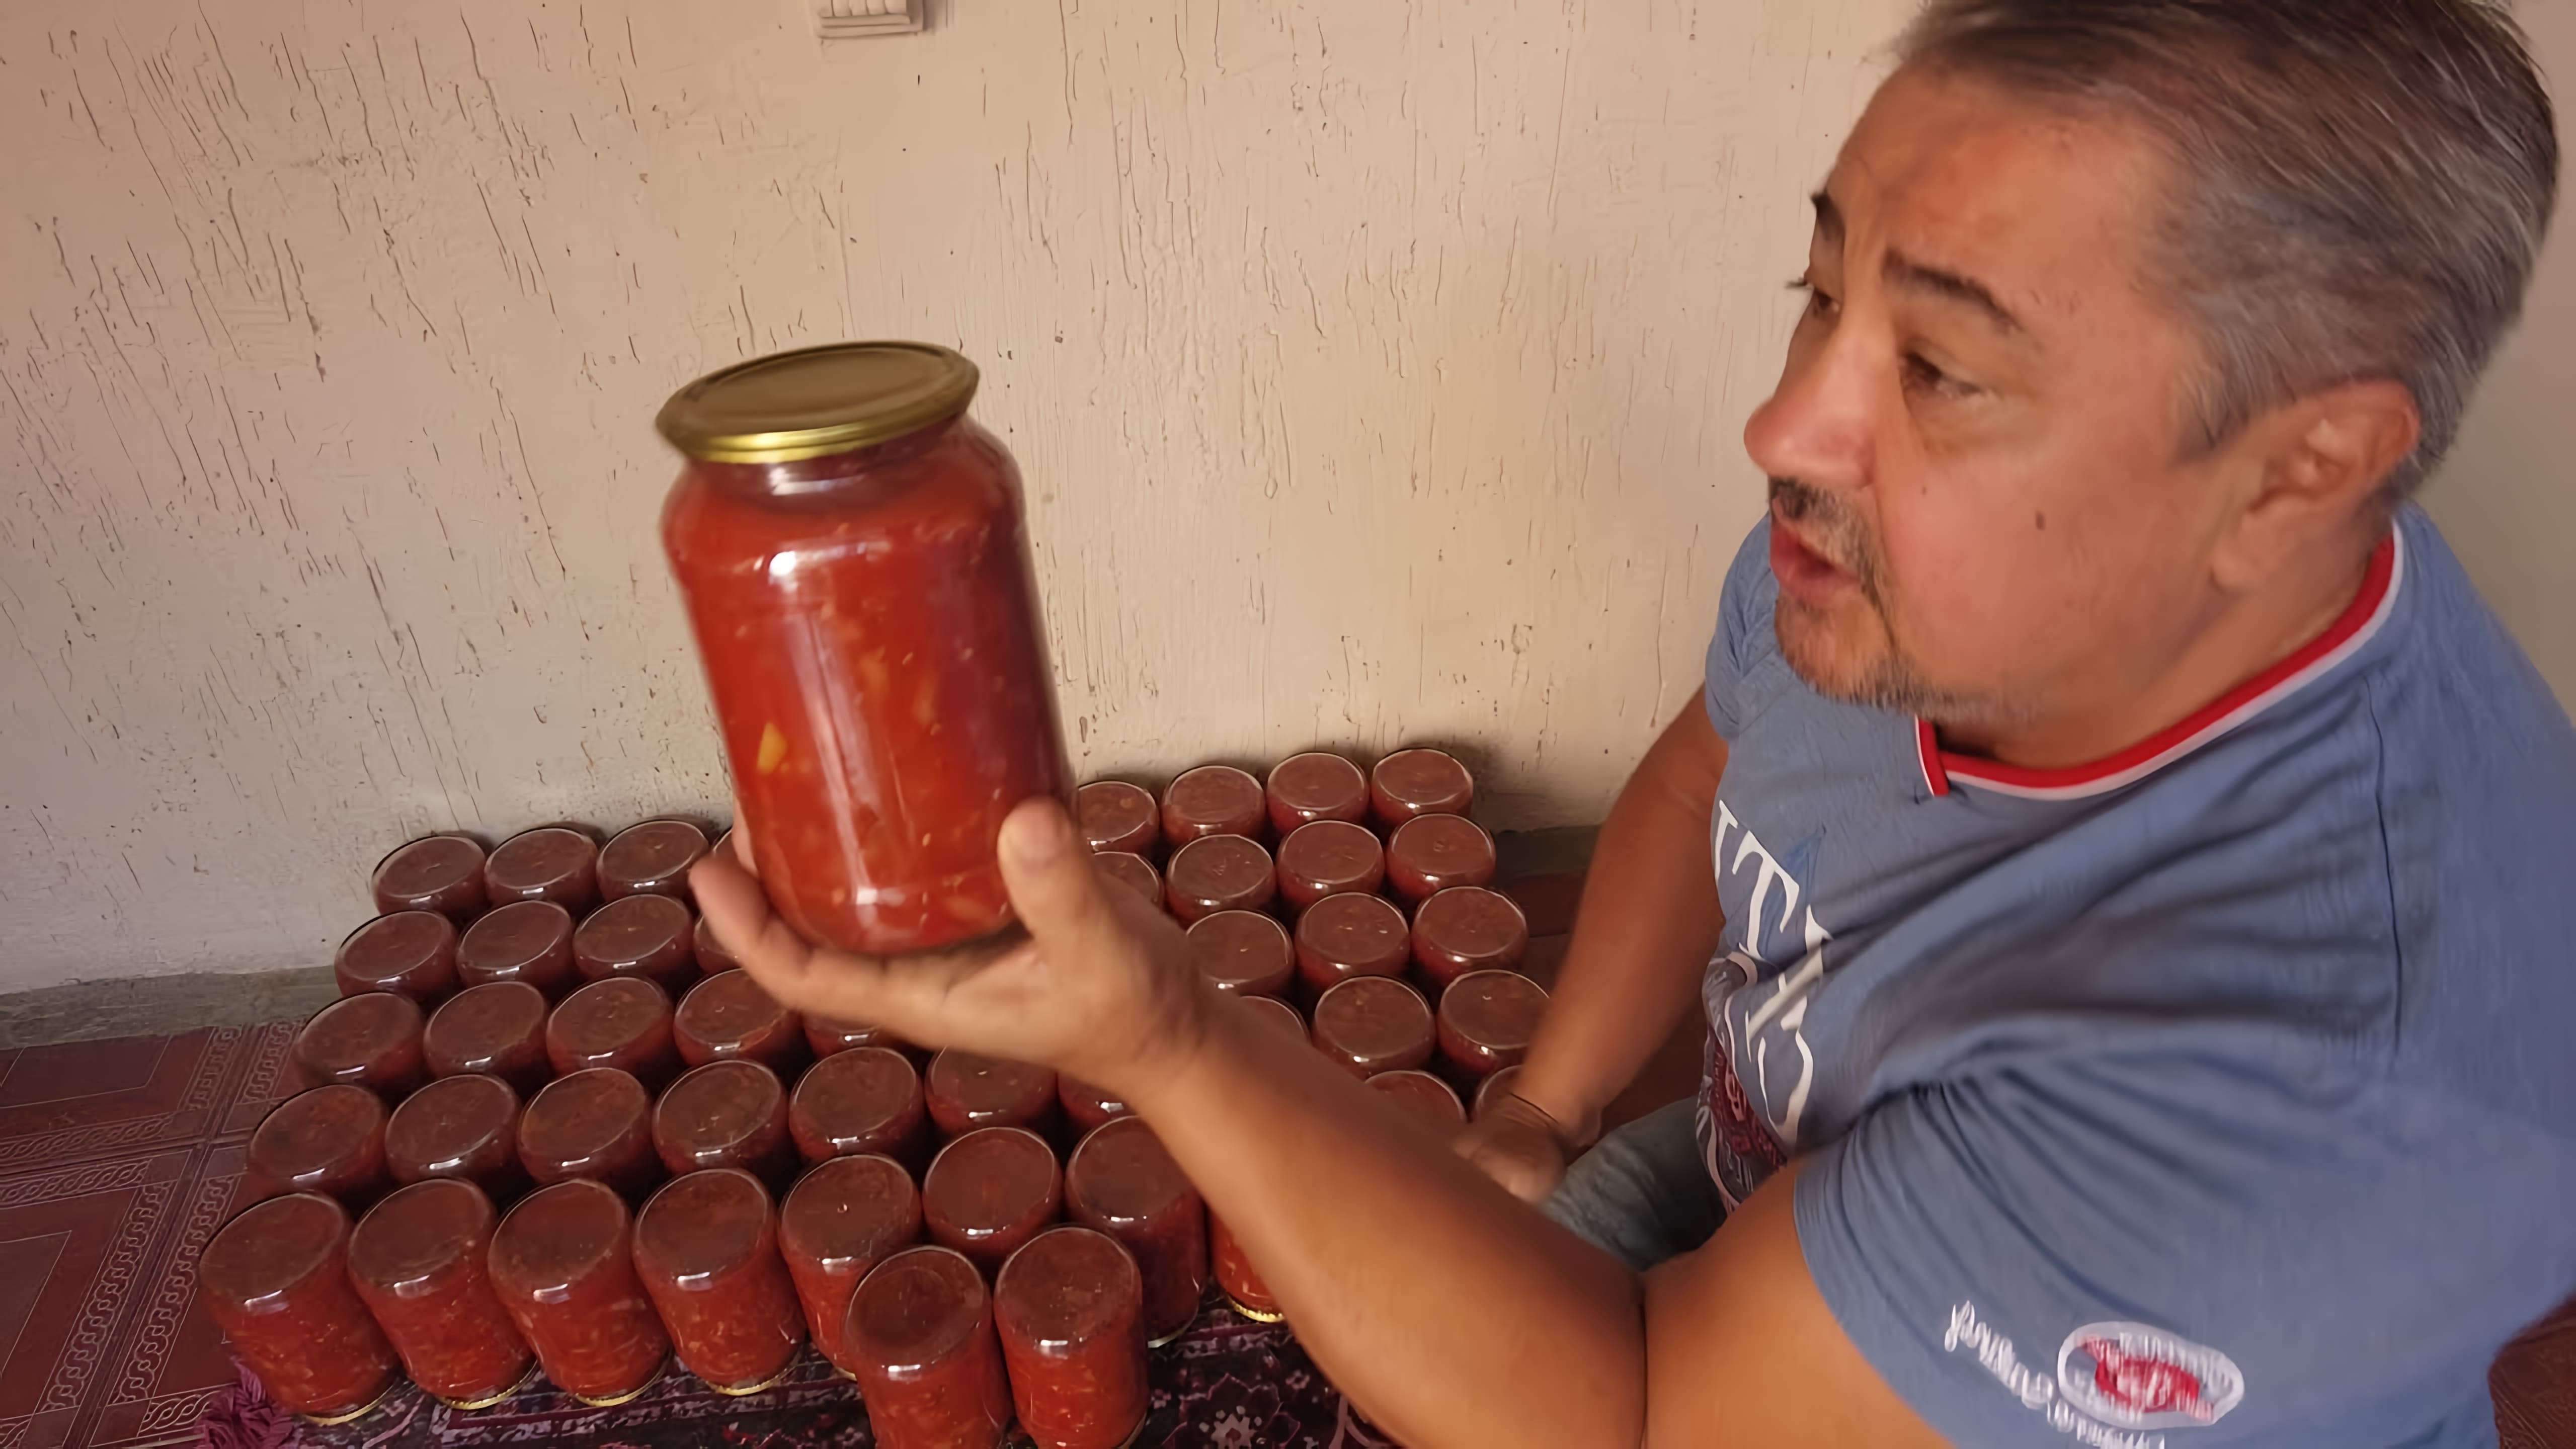 Видео как приготовить традиционное узбекское блюдо под названием "лечо", которое представляет собой овощной салат с бобами